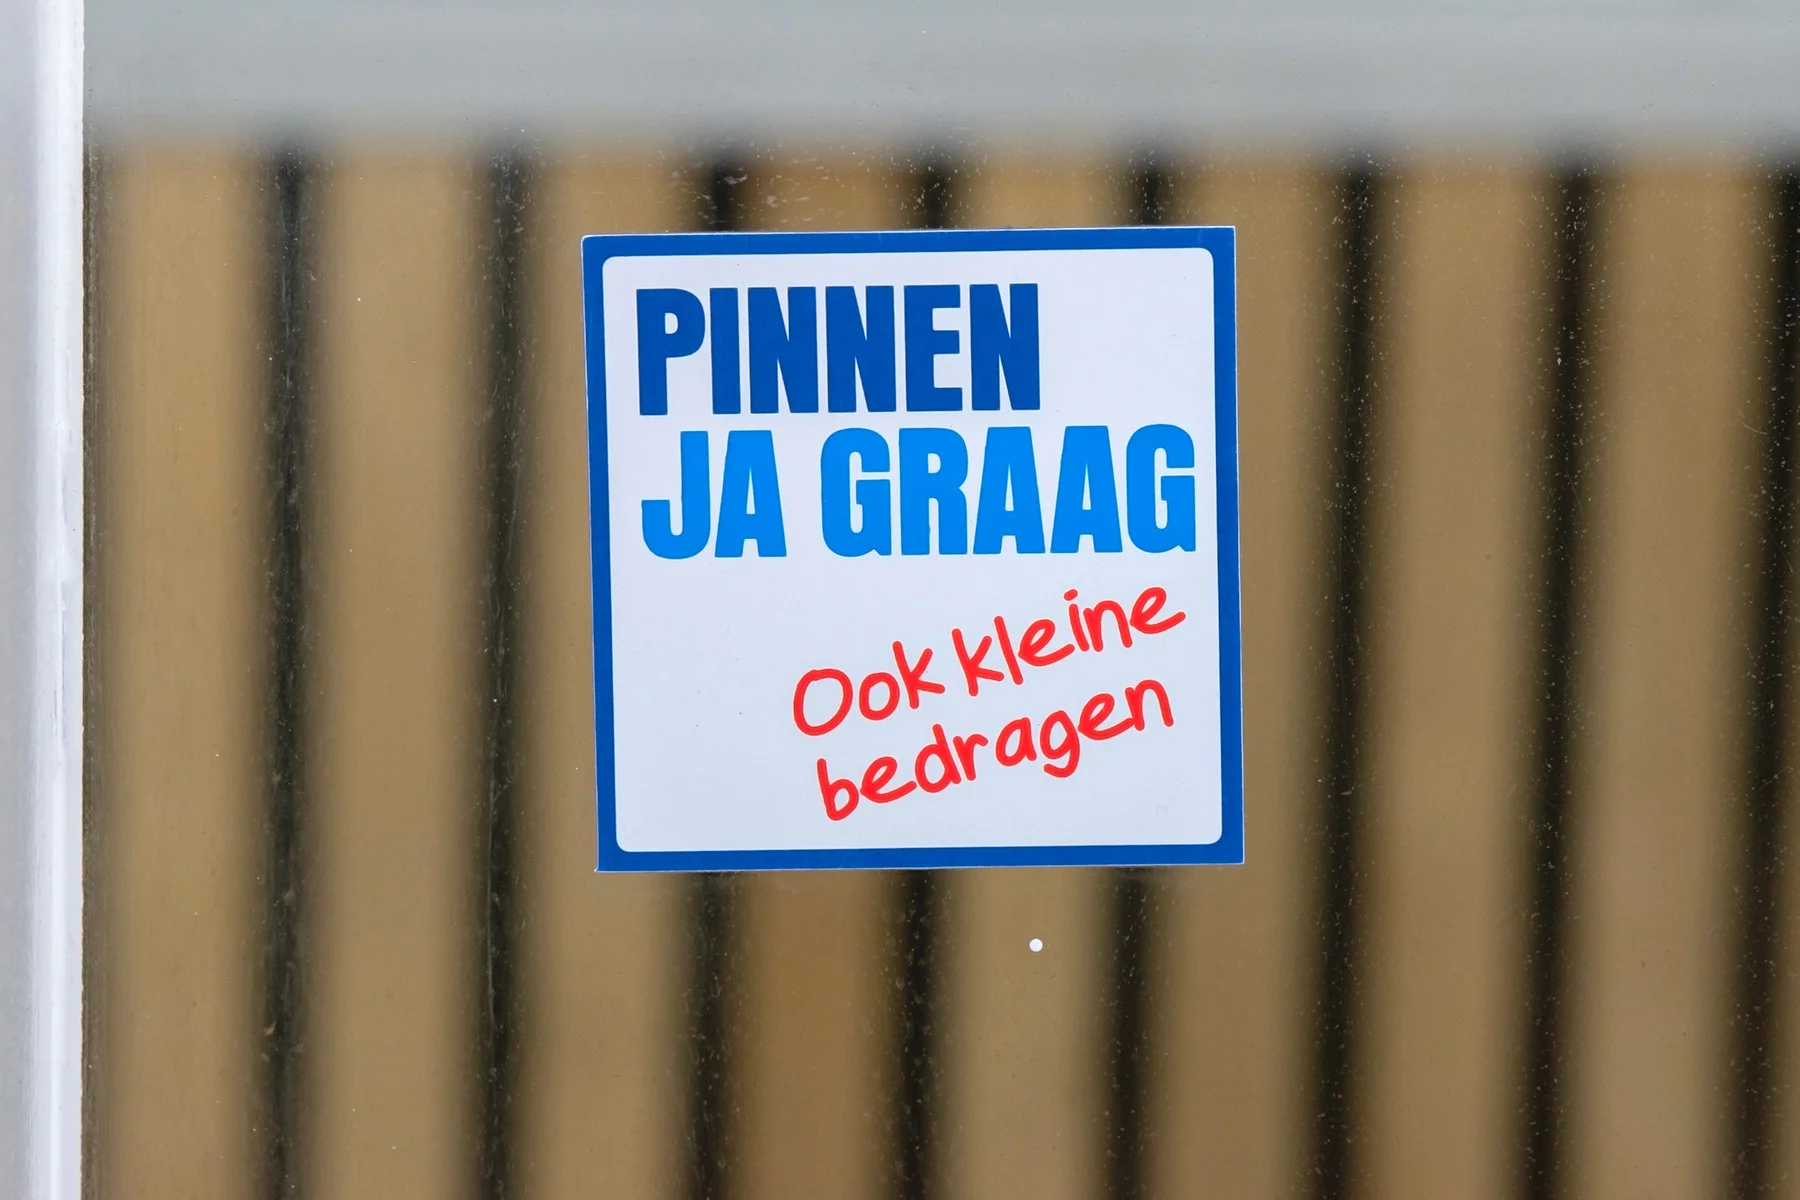 Pinnen, ja graag sticker in a store window in Amsterdam, the Netherlands